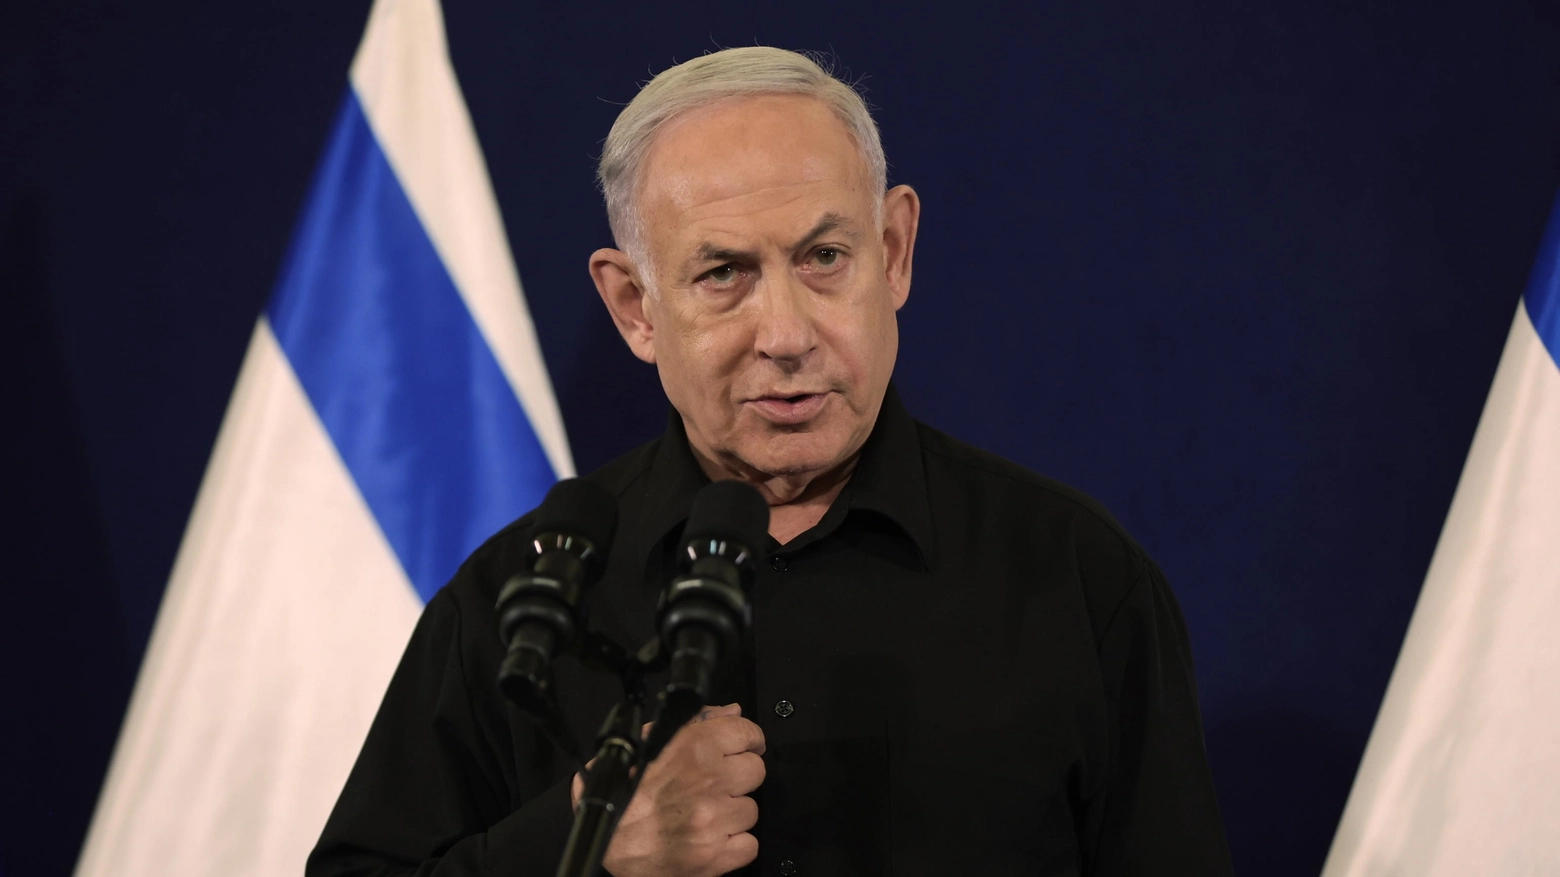 Il premier israeliano Netanyahu in total black nel discorso alla nazione (Ansa)